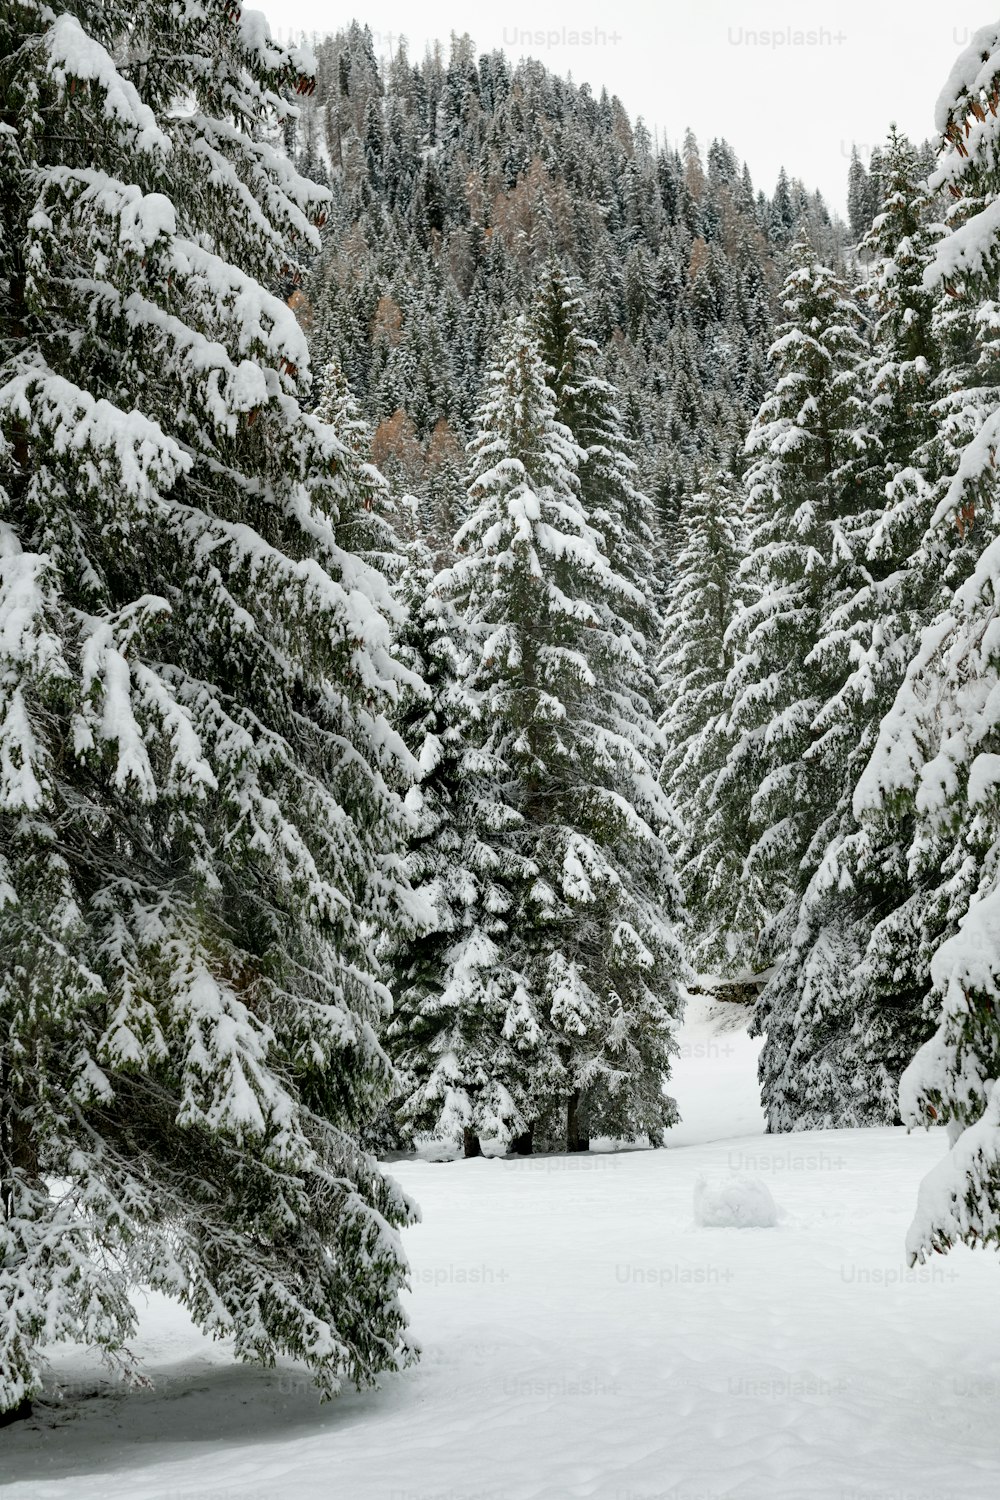 Eine Person auf Skiern mitten in einem verschneiten Wald